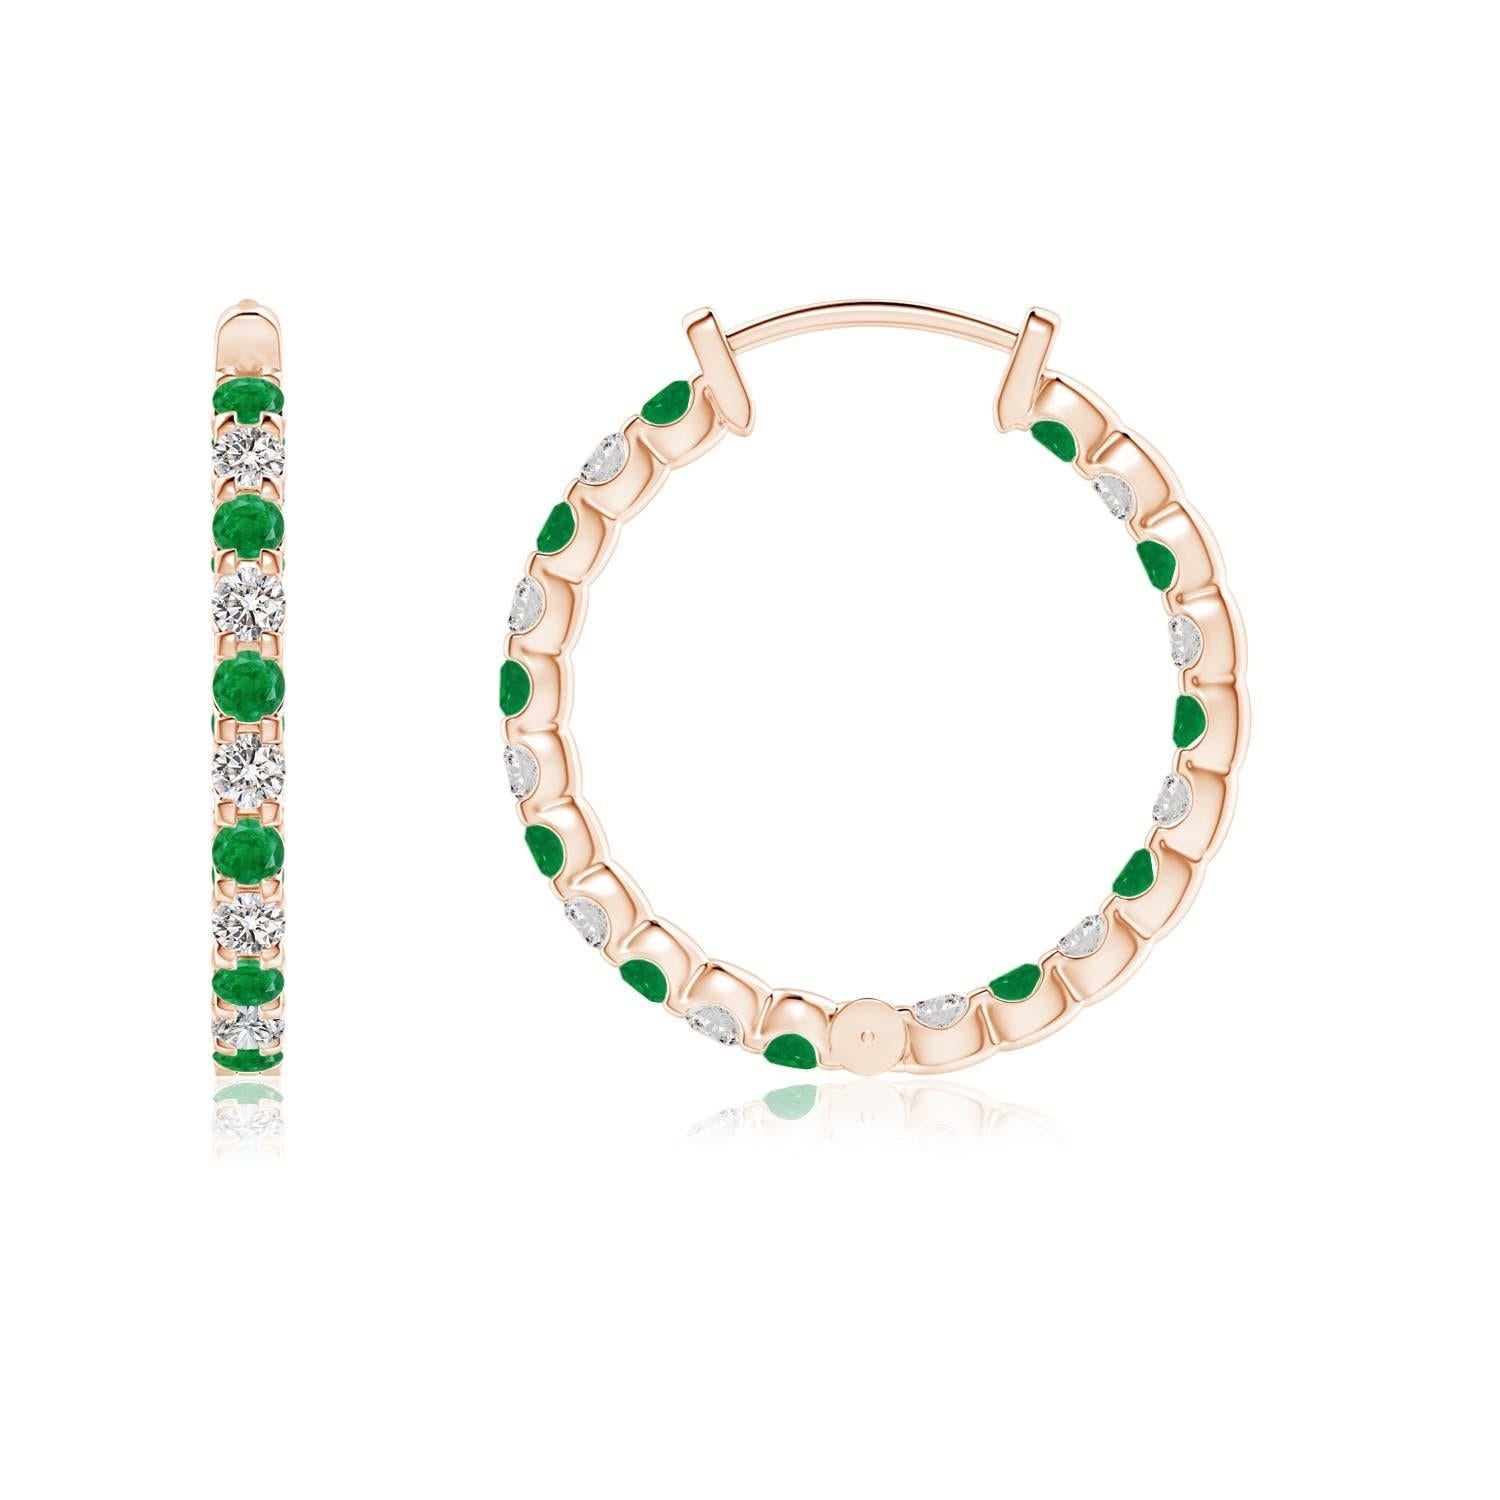 Diese atemberaubenden Ohrringe sind abwechselnd mit üppigen grünen Smaragden und Brillanten in Zackenfassung besetzt. Die funkelnden Edelsteine sind sowohl auf der Außenseite als auch auf der Innenseite dieser 14 Karat Roségold-Ringe verziert und